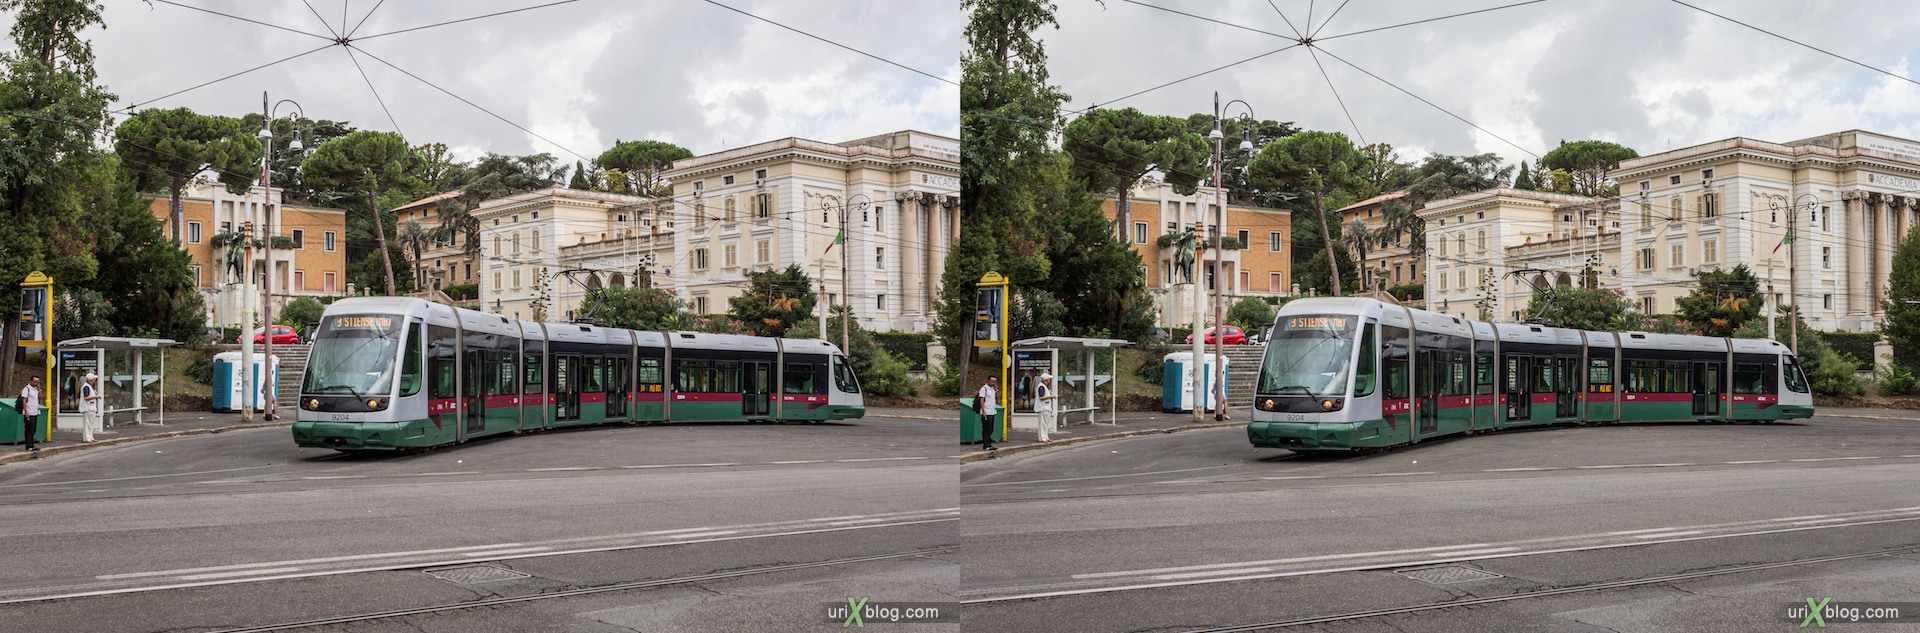 2012, площадь Piazza Thorvaldsen, трамвай, вилла Боргезе, Рим, Италия, осень, 3D, перекрёстные стереопары, стерео, стереопара, стереопары